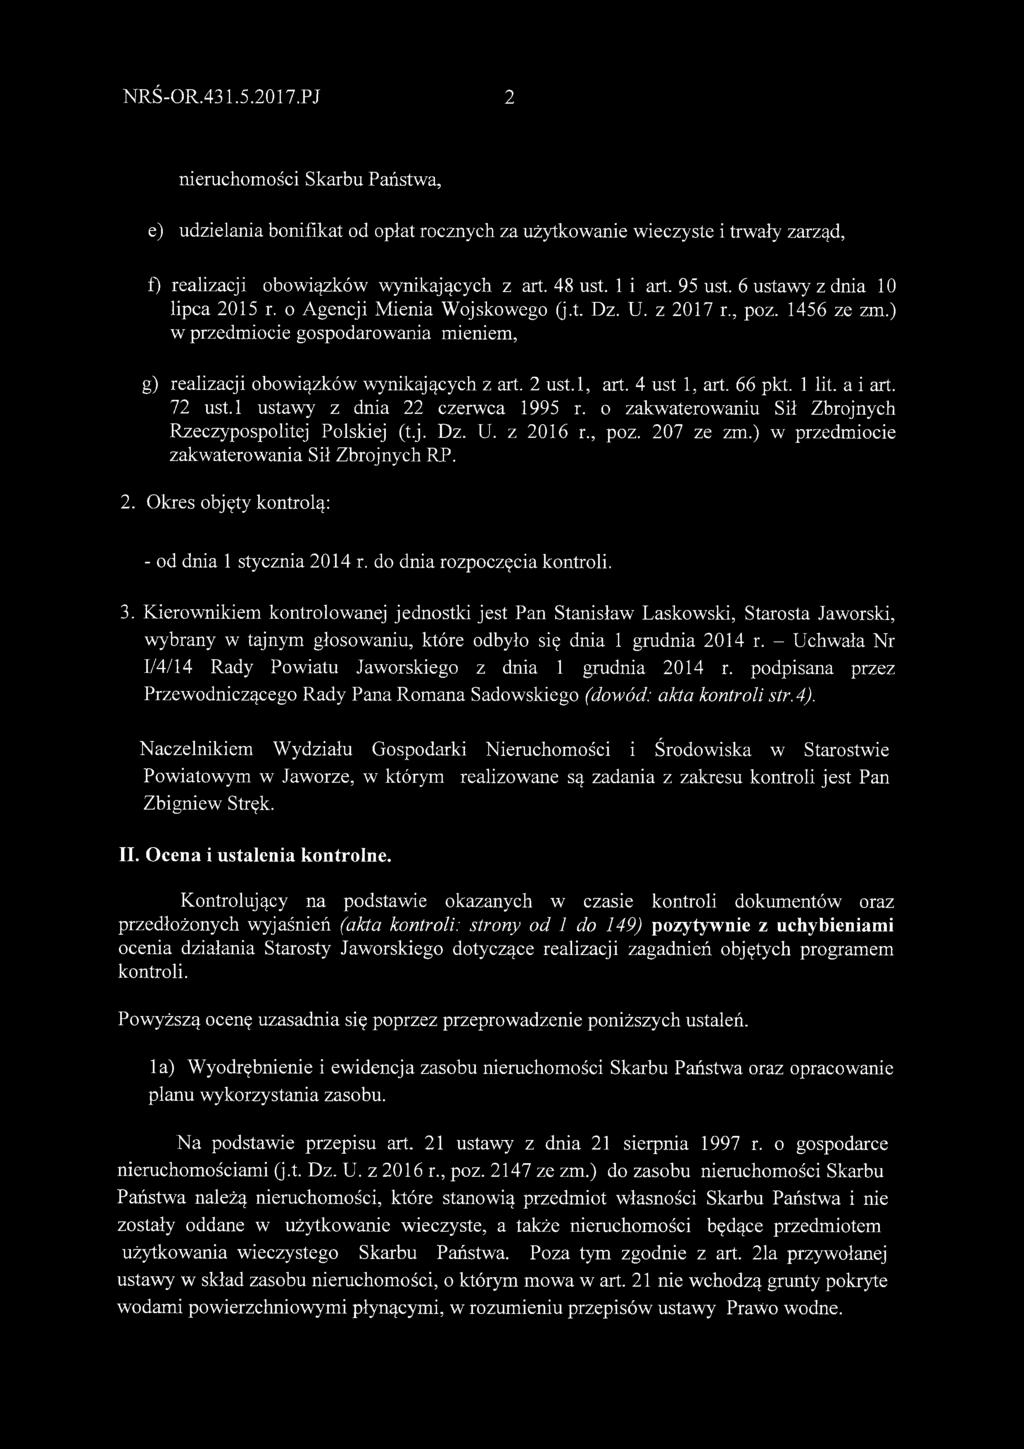 l, art. 4 ust 1, art. 66 pkt. 1 lit. a i art. 72 ust.l ustawy z dnia 22 czerwca 1995 r. o zakwaterowaniu Sił Zbrojnych Rzeczypospolitej Polskiej (t.j. Dz. U. z 2016 r., poz. 207 ze zm.